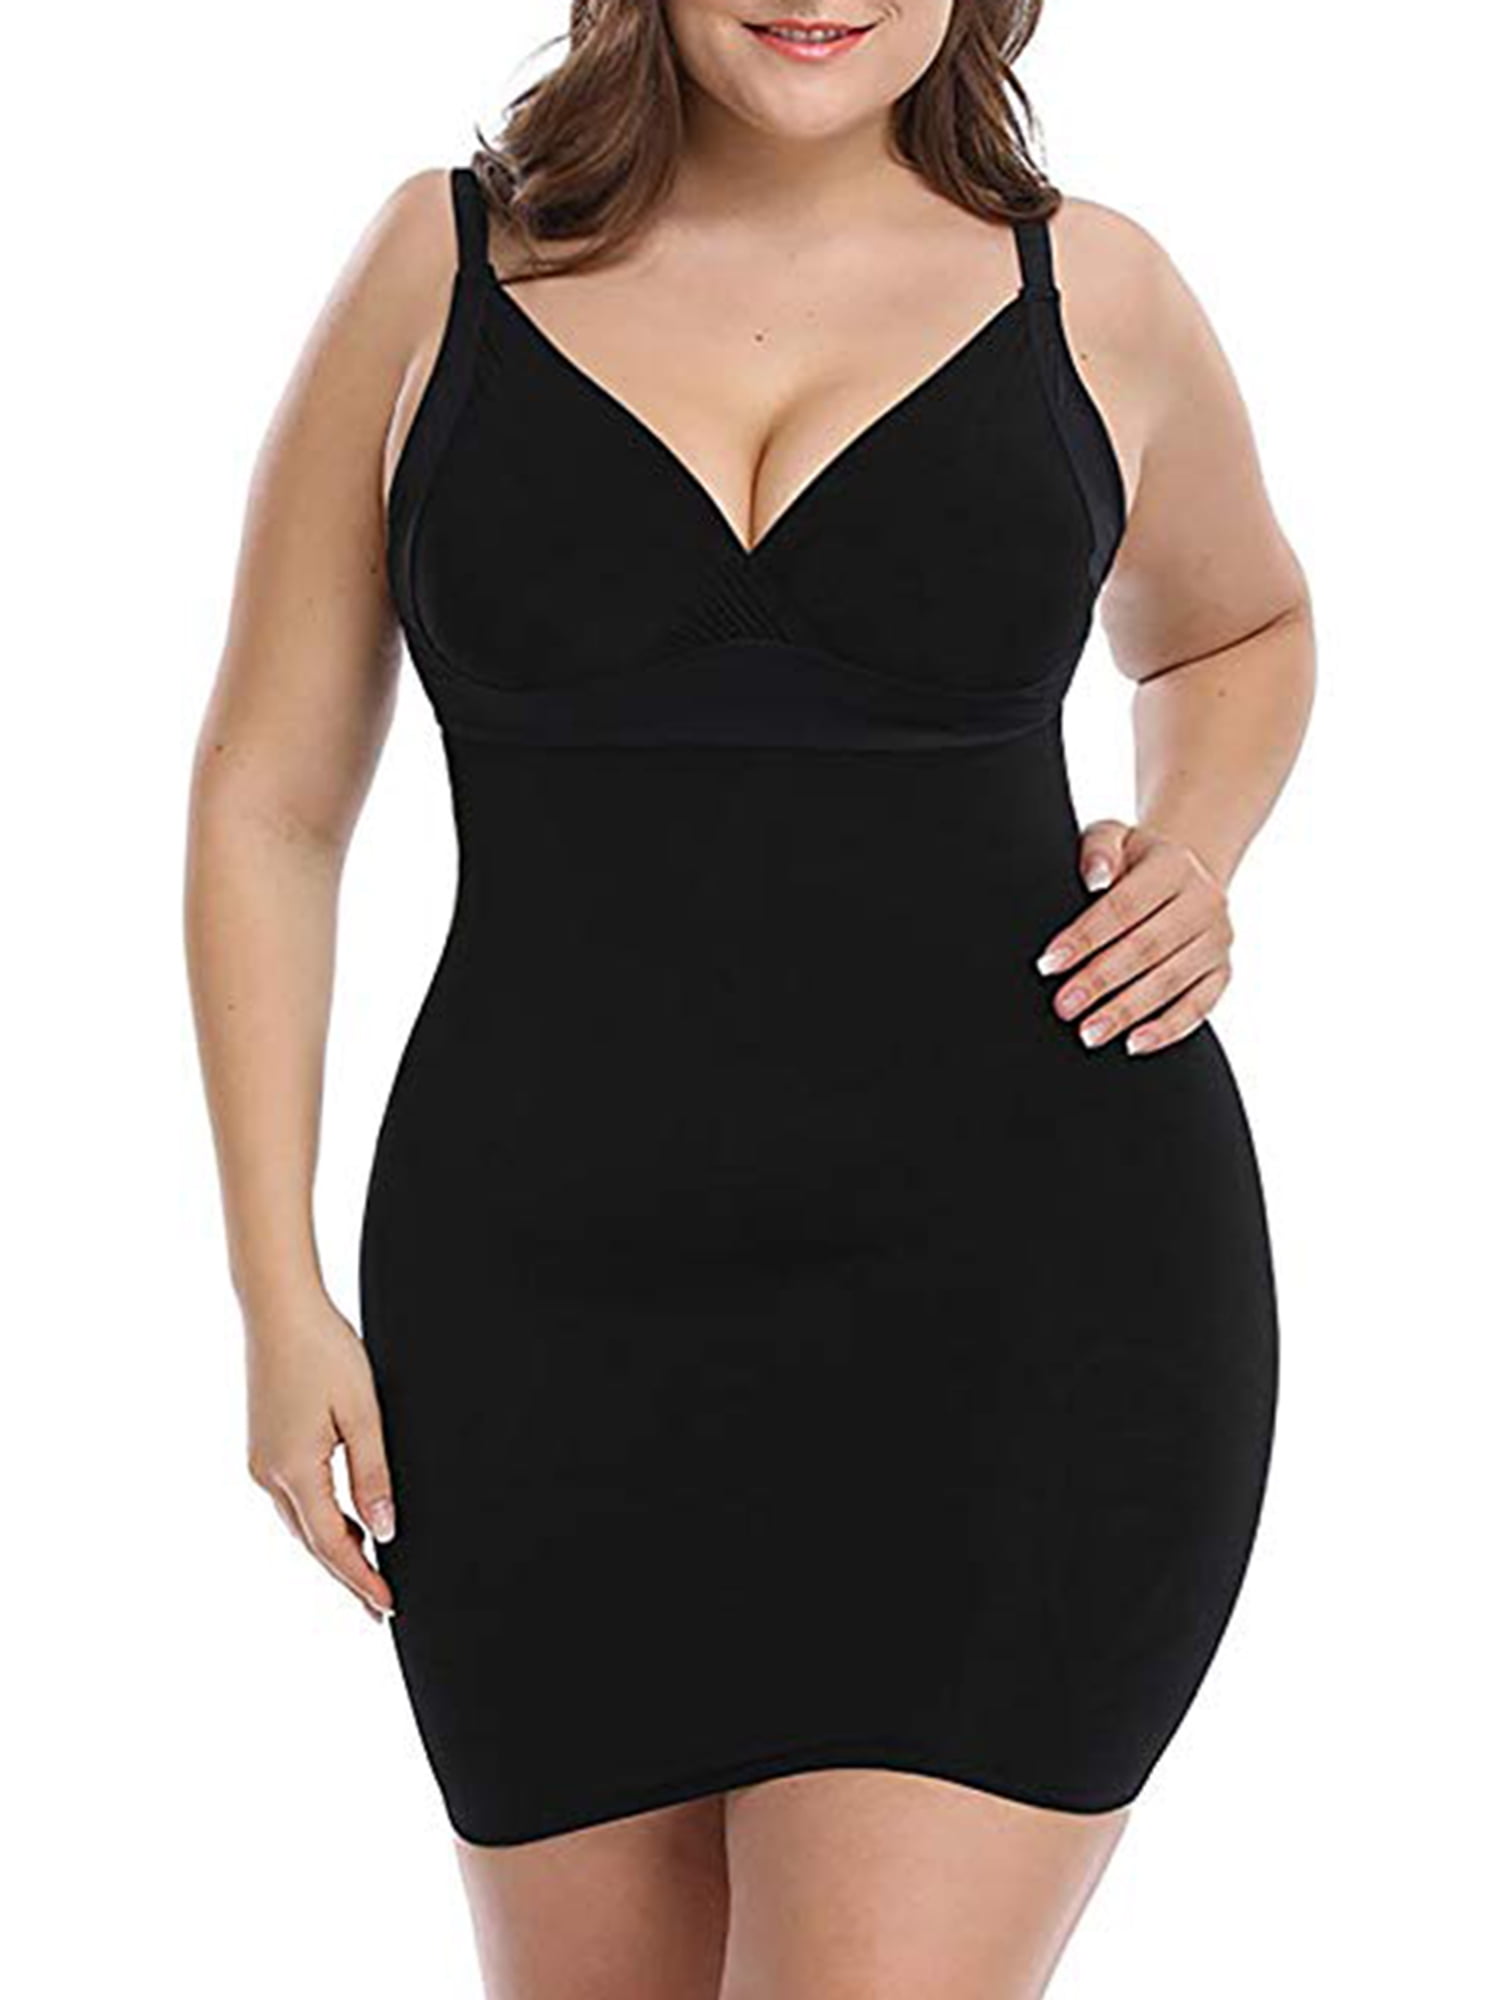 SAYFUT Women's Plus Size Body Shaper Seamless Slips Under Dress Long  Slimmer Shapewear XL-5XL